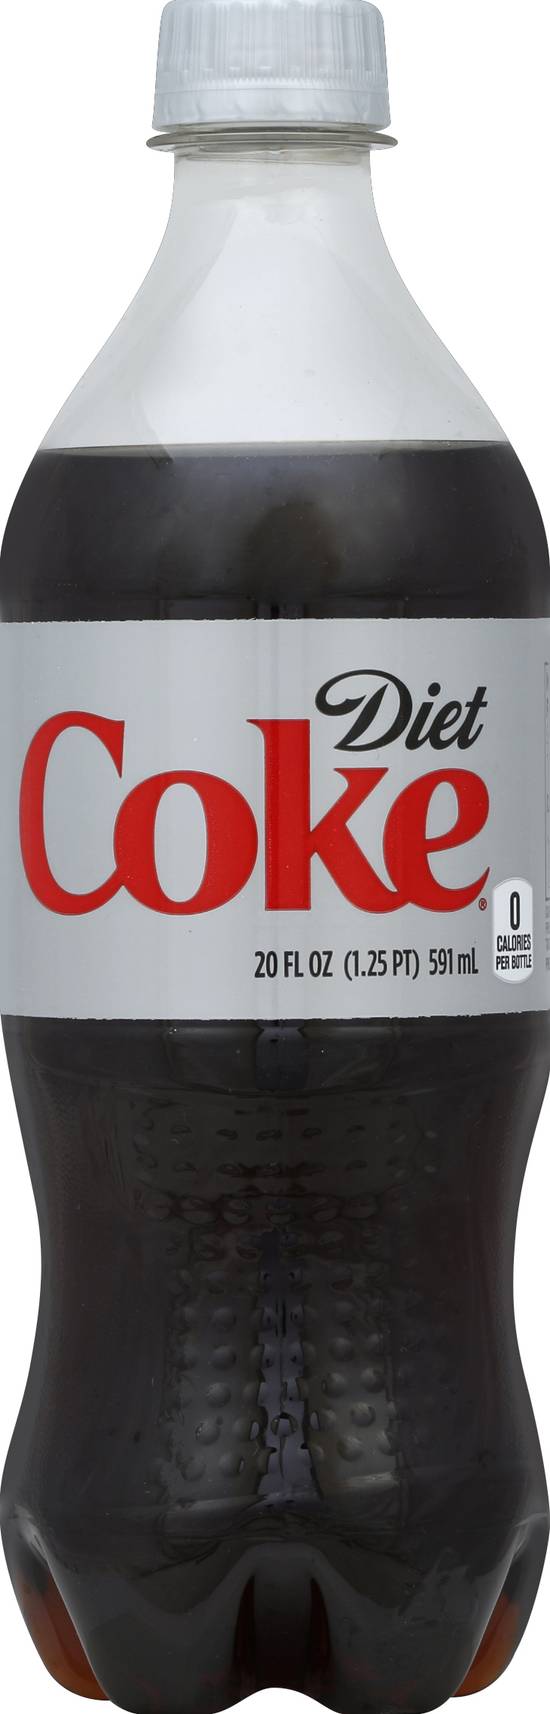 Diet Coke Soda (20 fl oz)